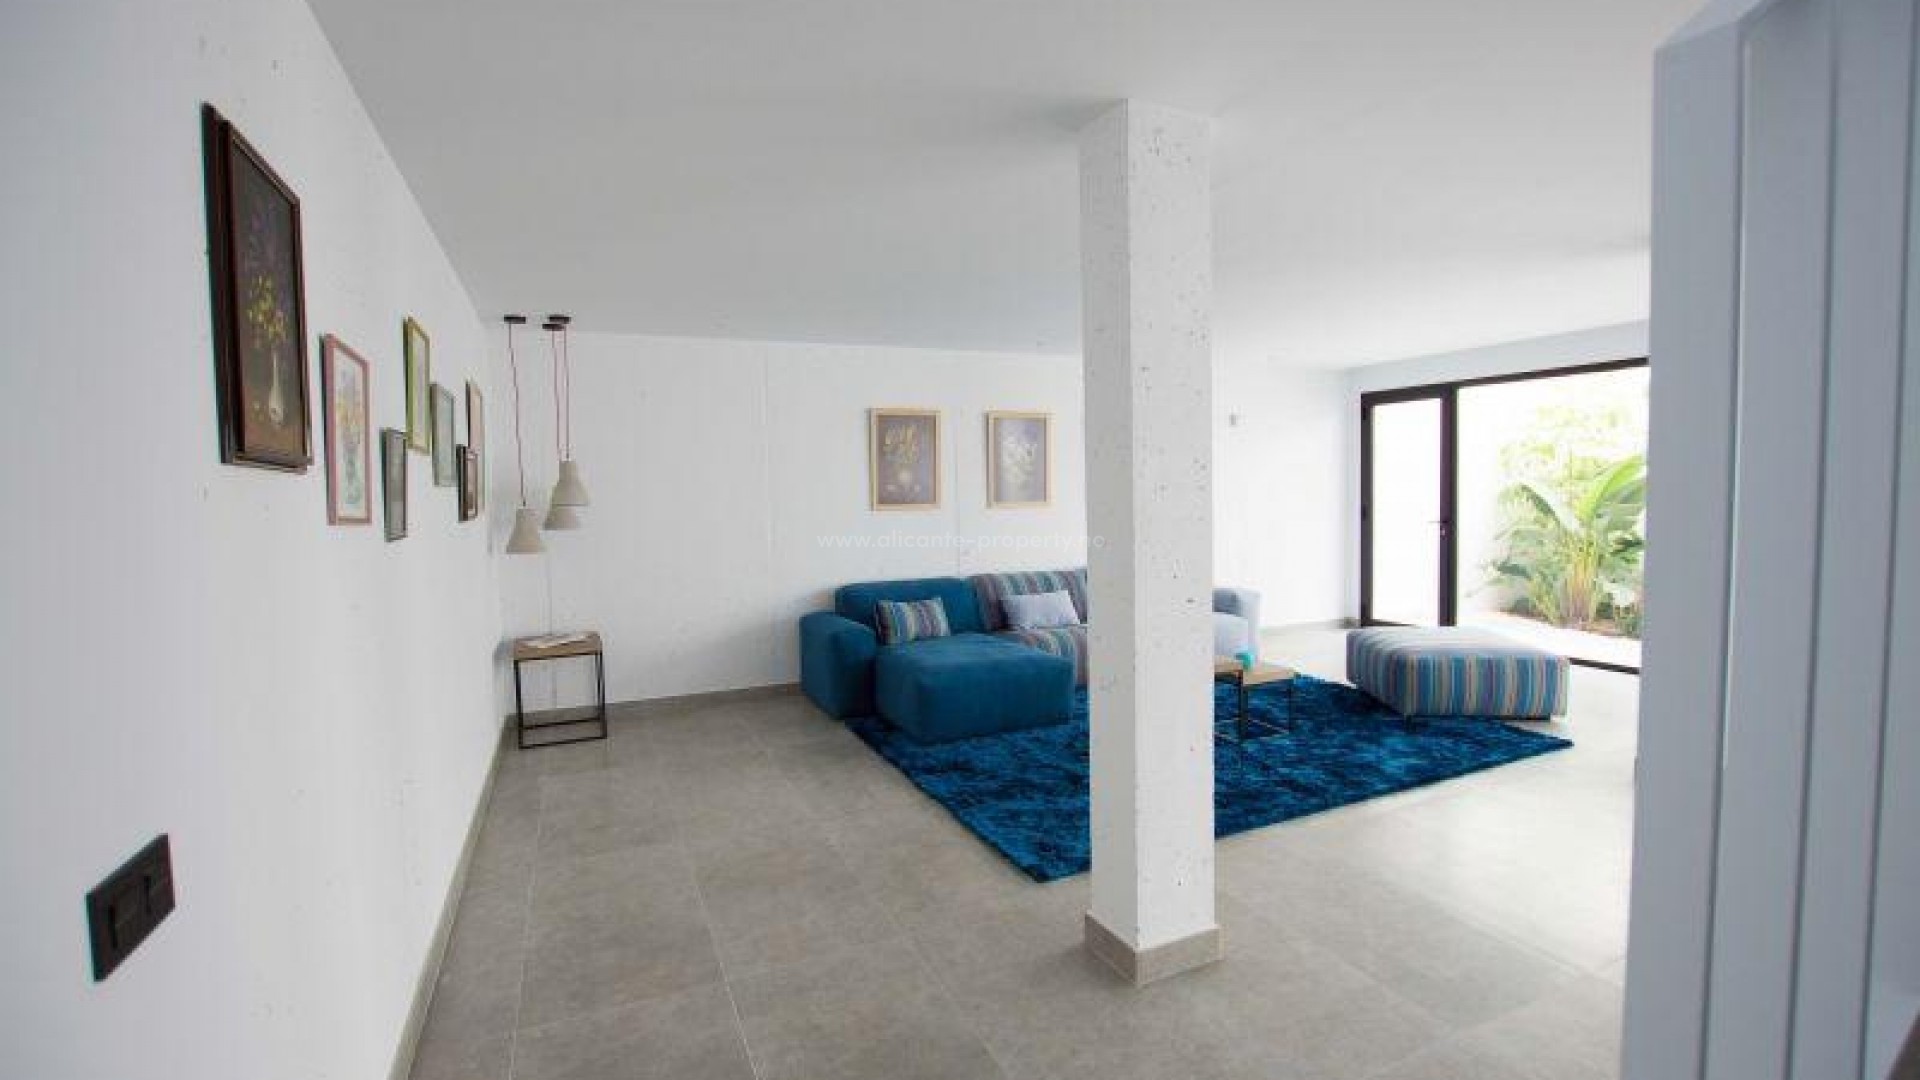 Luksuriøse hus/villa på et plan i Sierra Cortina, Alicante, 3 soverom, 2 bad, hage med basseng, solarium med fin utsikt